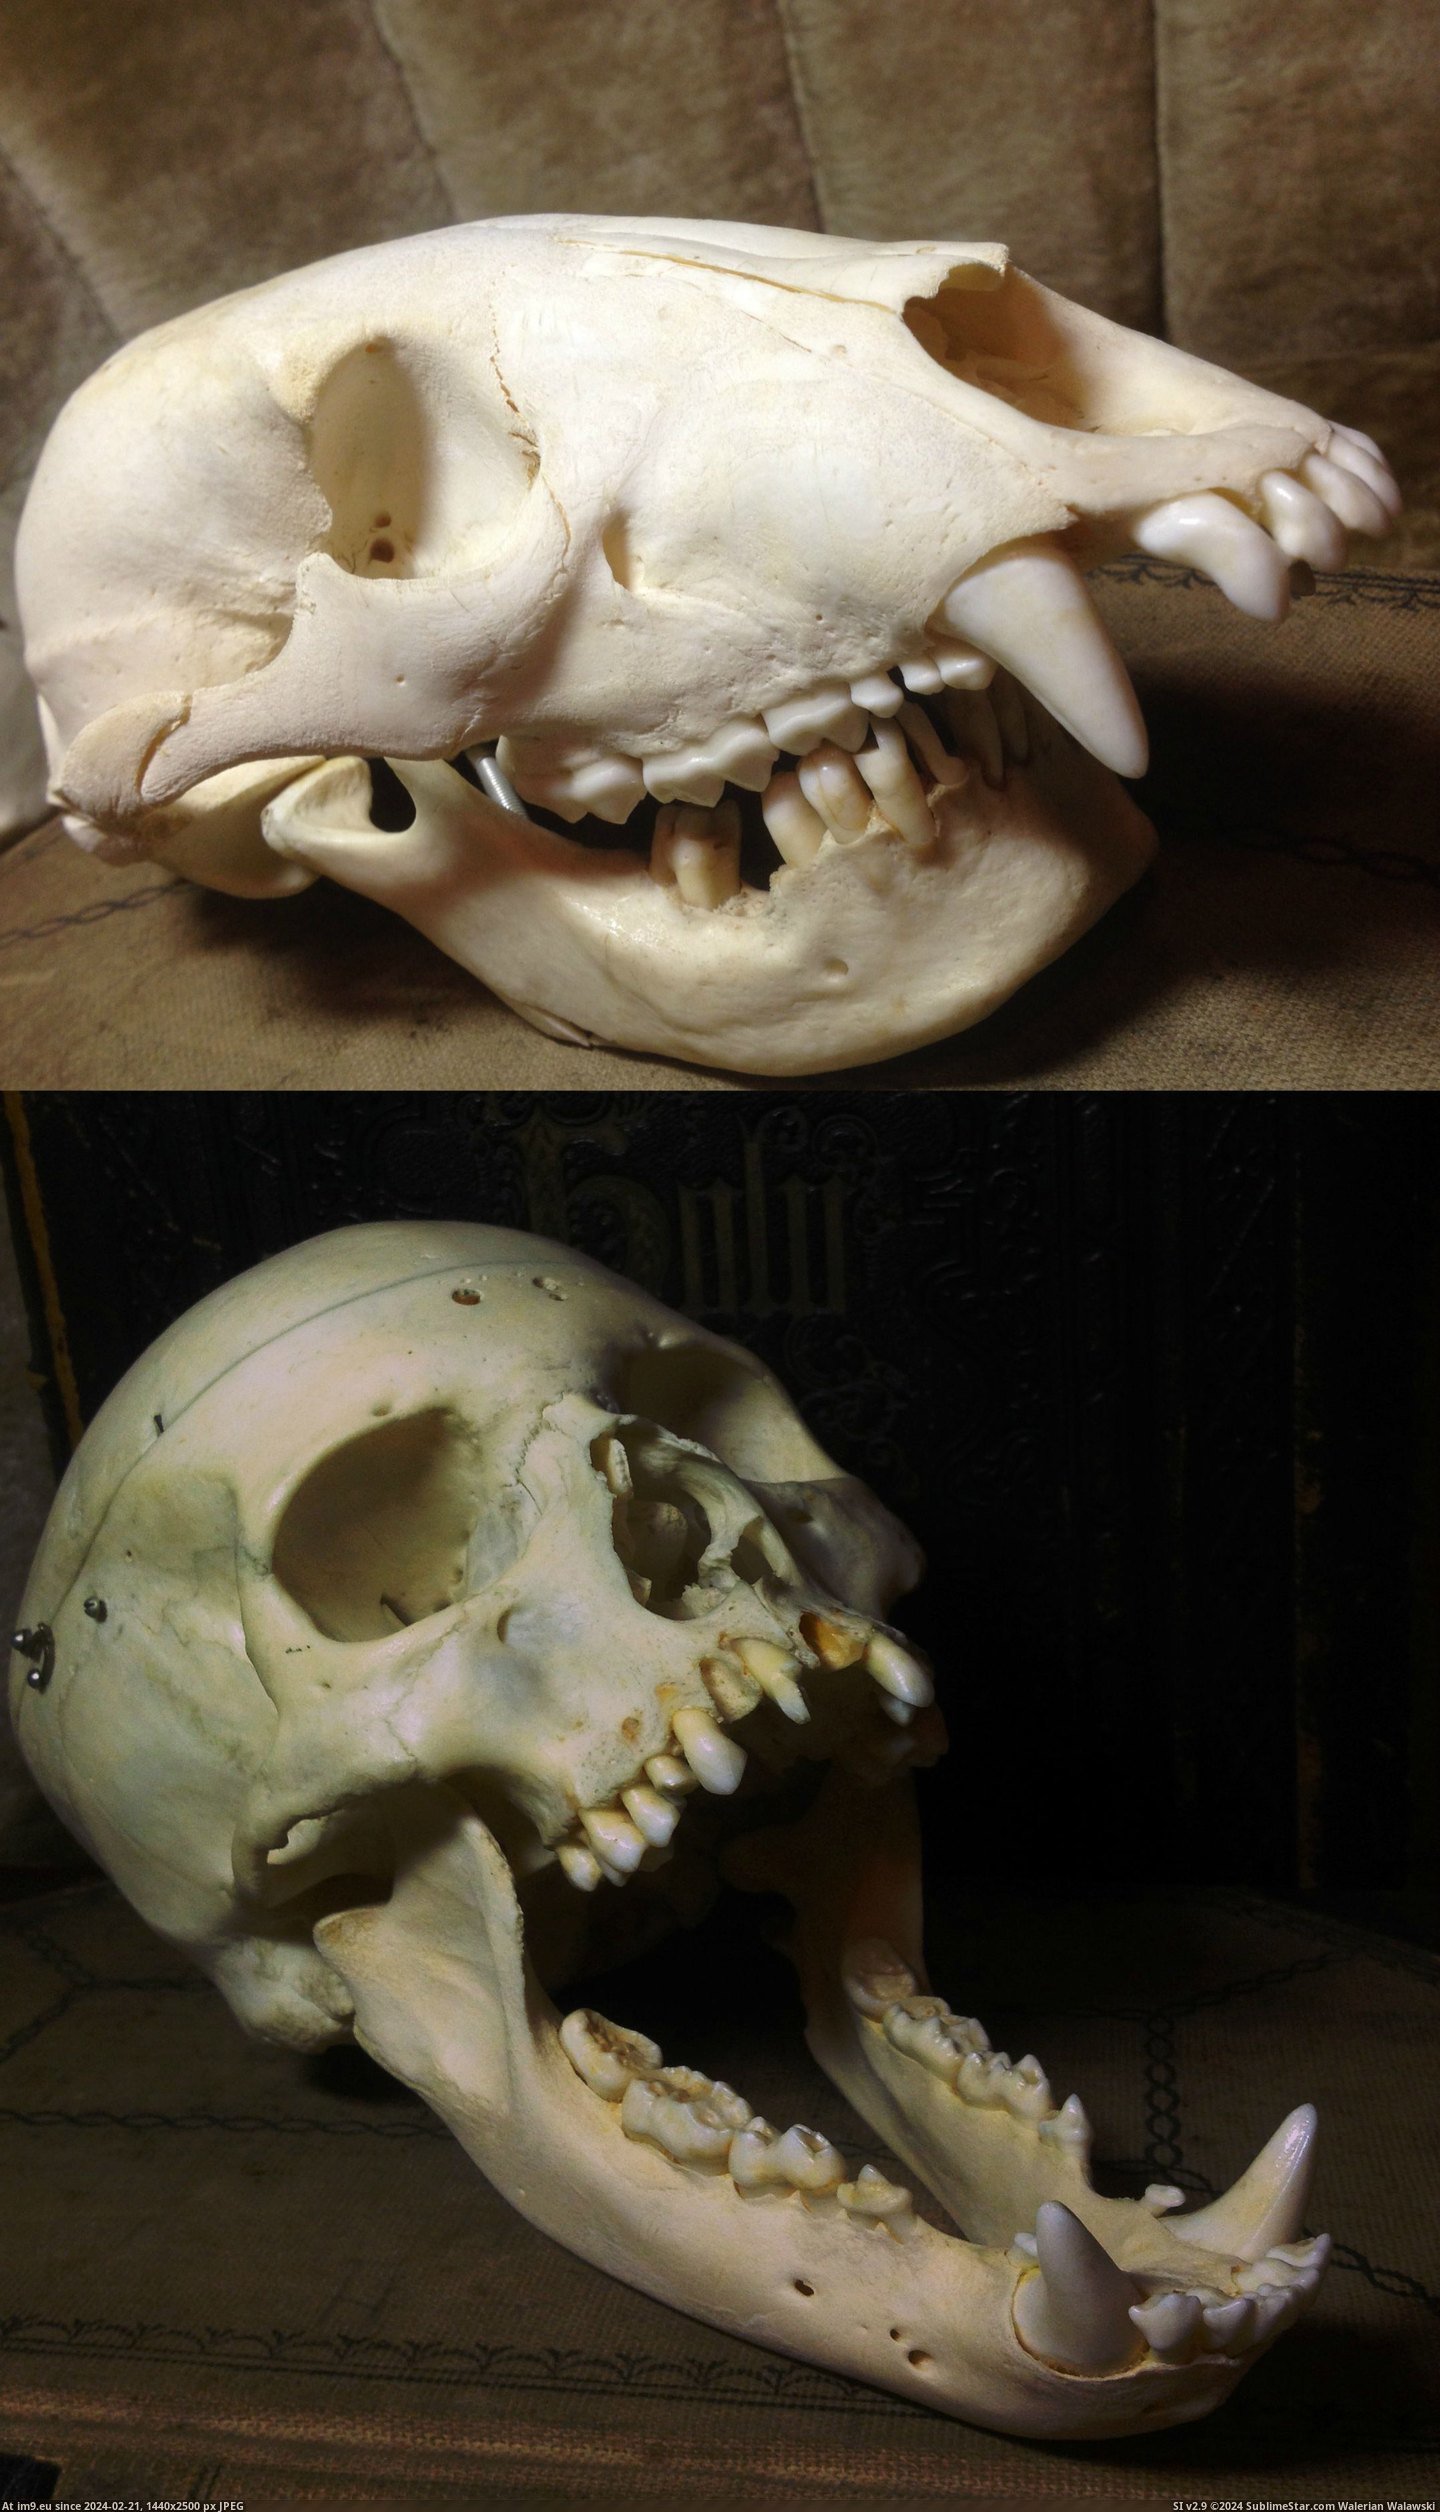 #Wtf #Human #Swap #Bear #Skull [Wtf] Human & Bear Skull Swap Pic. (Obraz z album My r/WTF favs))